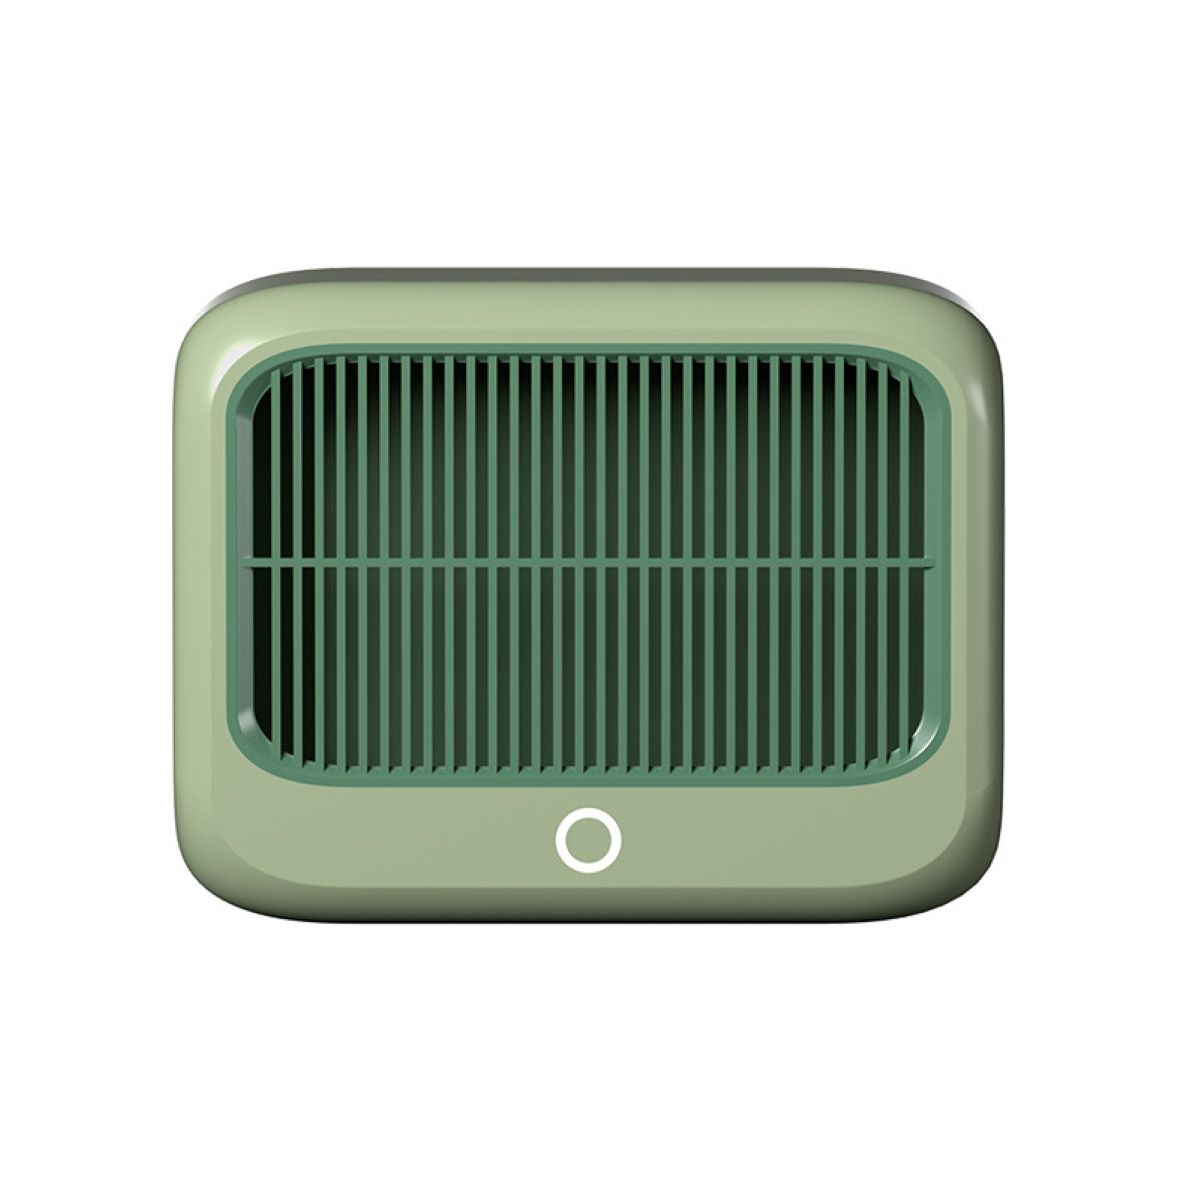 für - Watt, Raumgröße: Temperatur das Power Heizlüfter Dumping m²) LACAMAX Off 20 Grüne Heizung Konstante Schlafzimmer tragbare Wärme, (1200